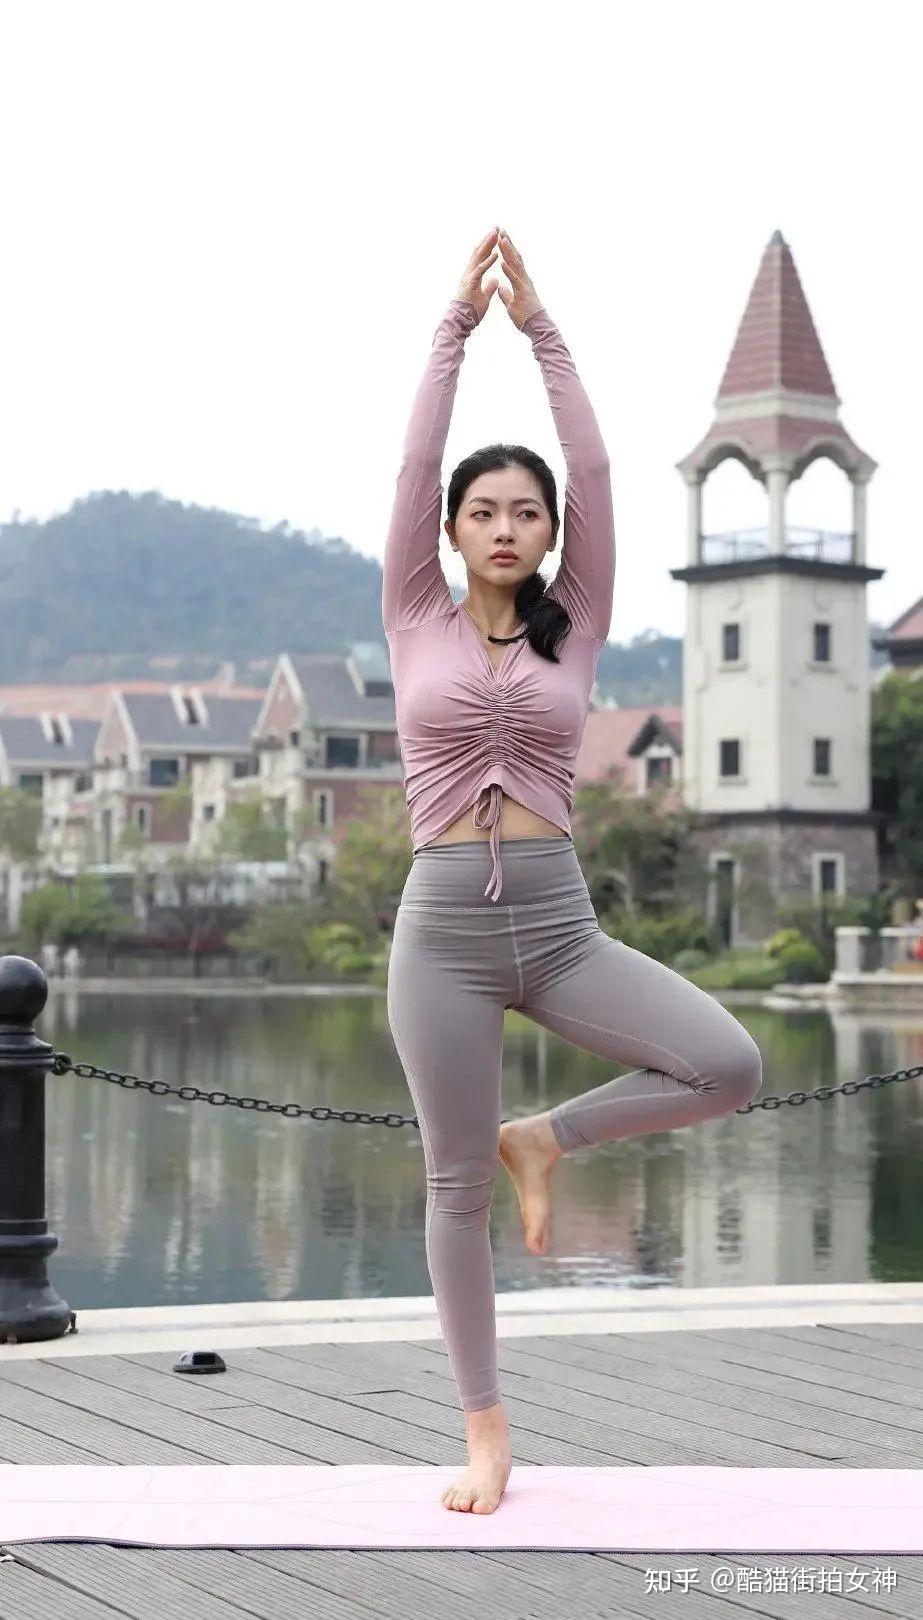 魔镜街拍紧身瑜伽微博图片